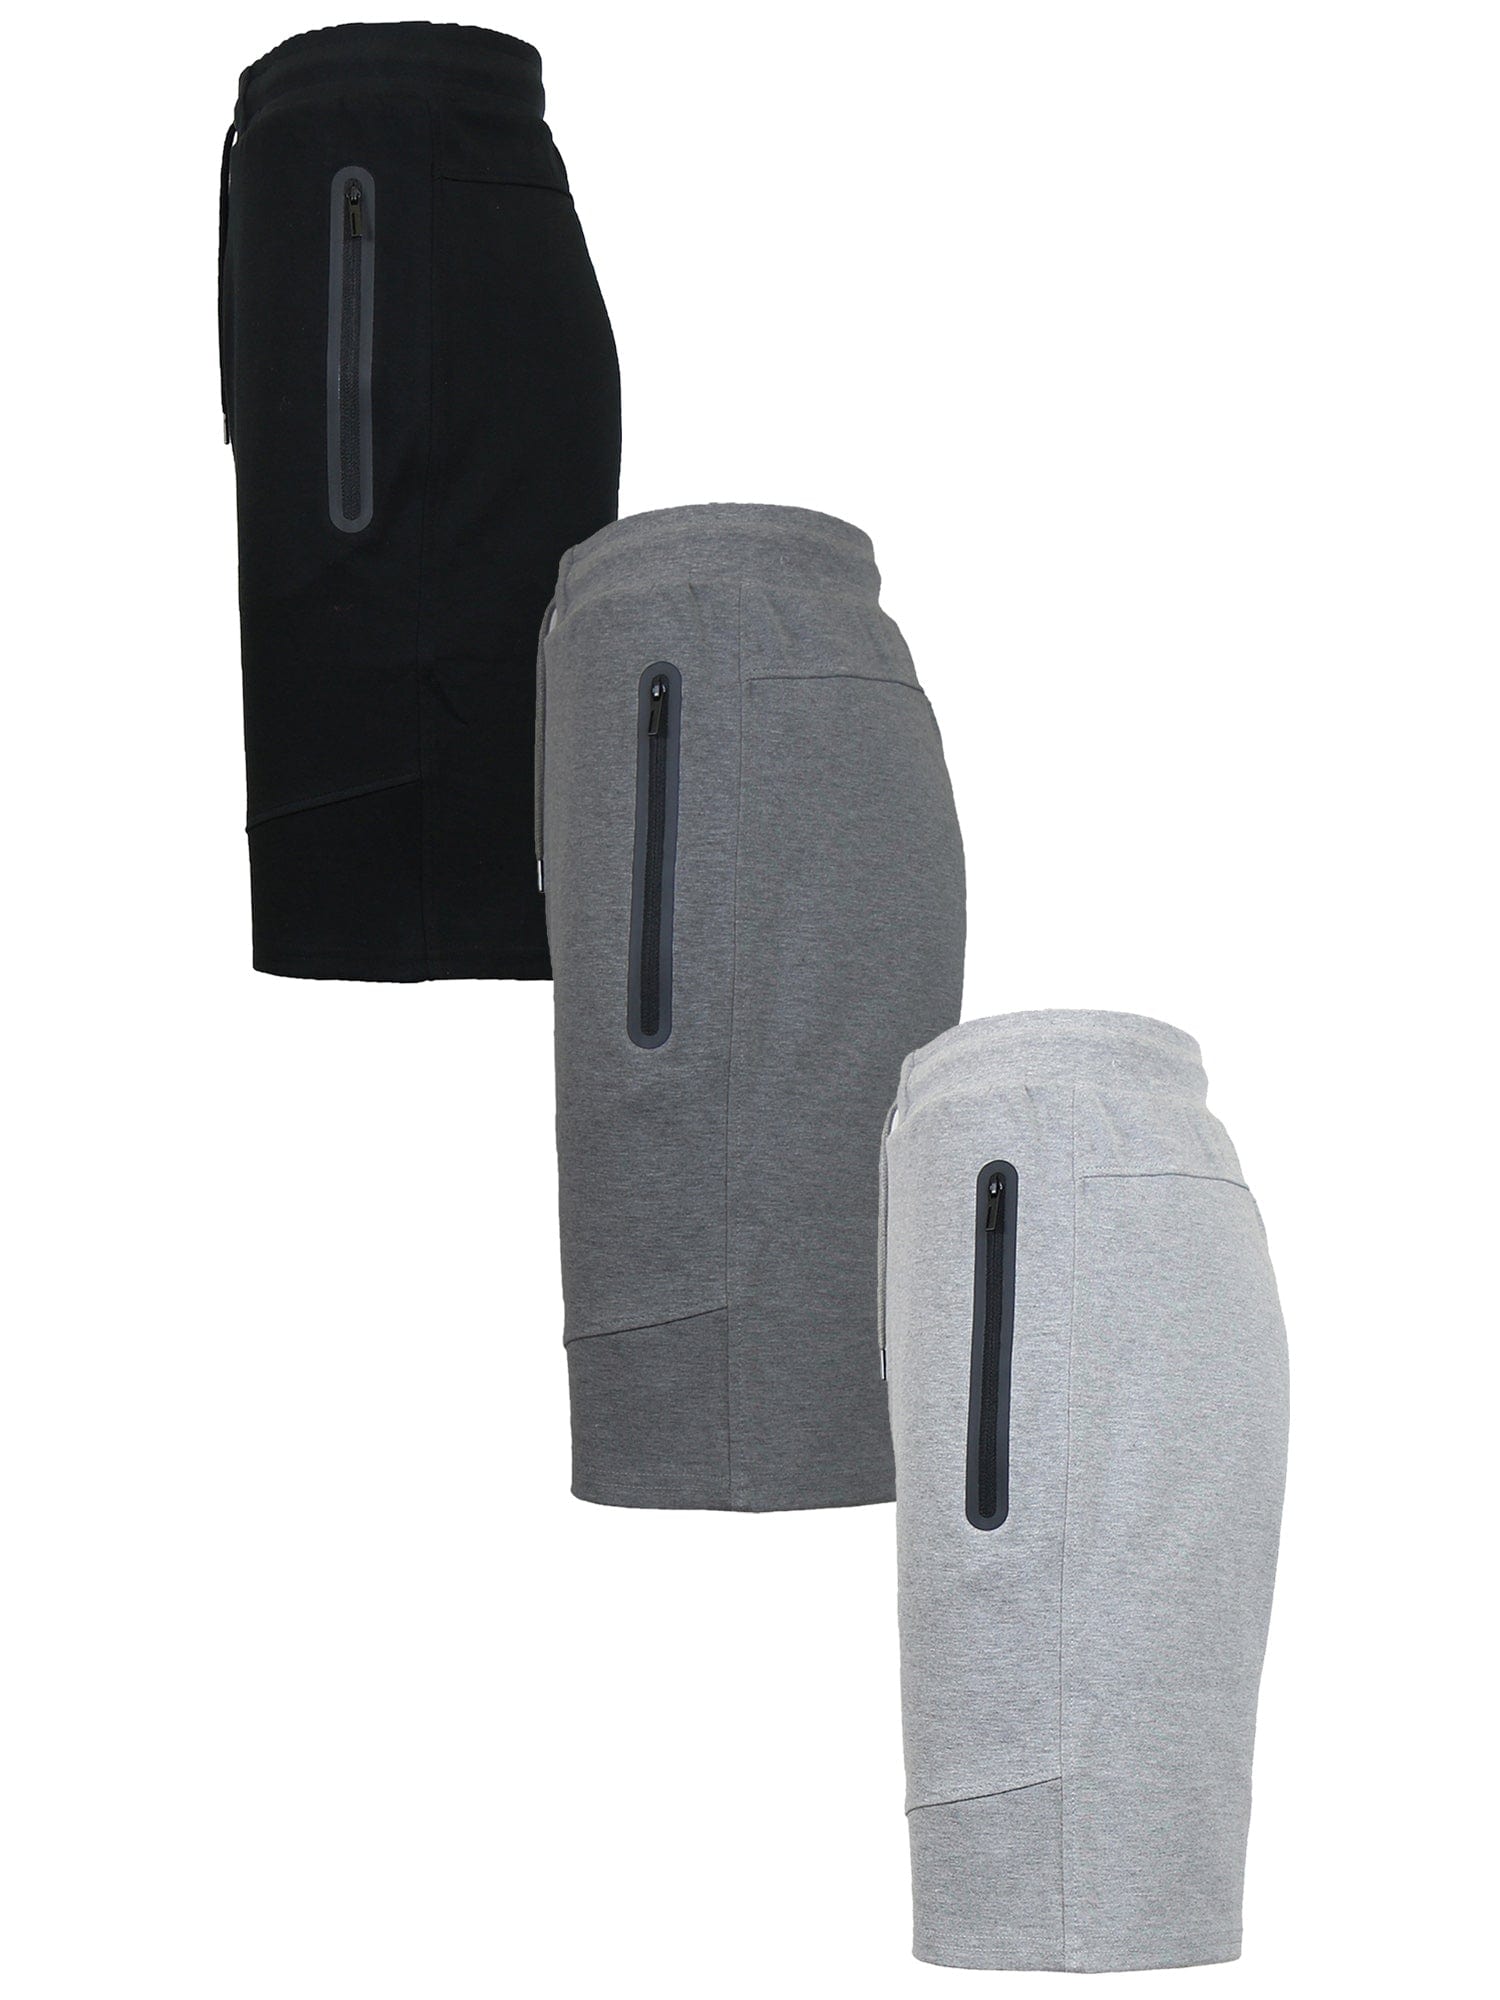 Afdeling Inspiratie Mangel 3-PACK Men's Tech Fleece Performance Active Shorts Set – GalaxybyHarvic